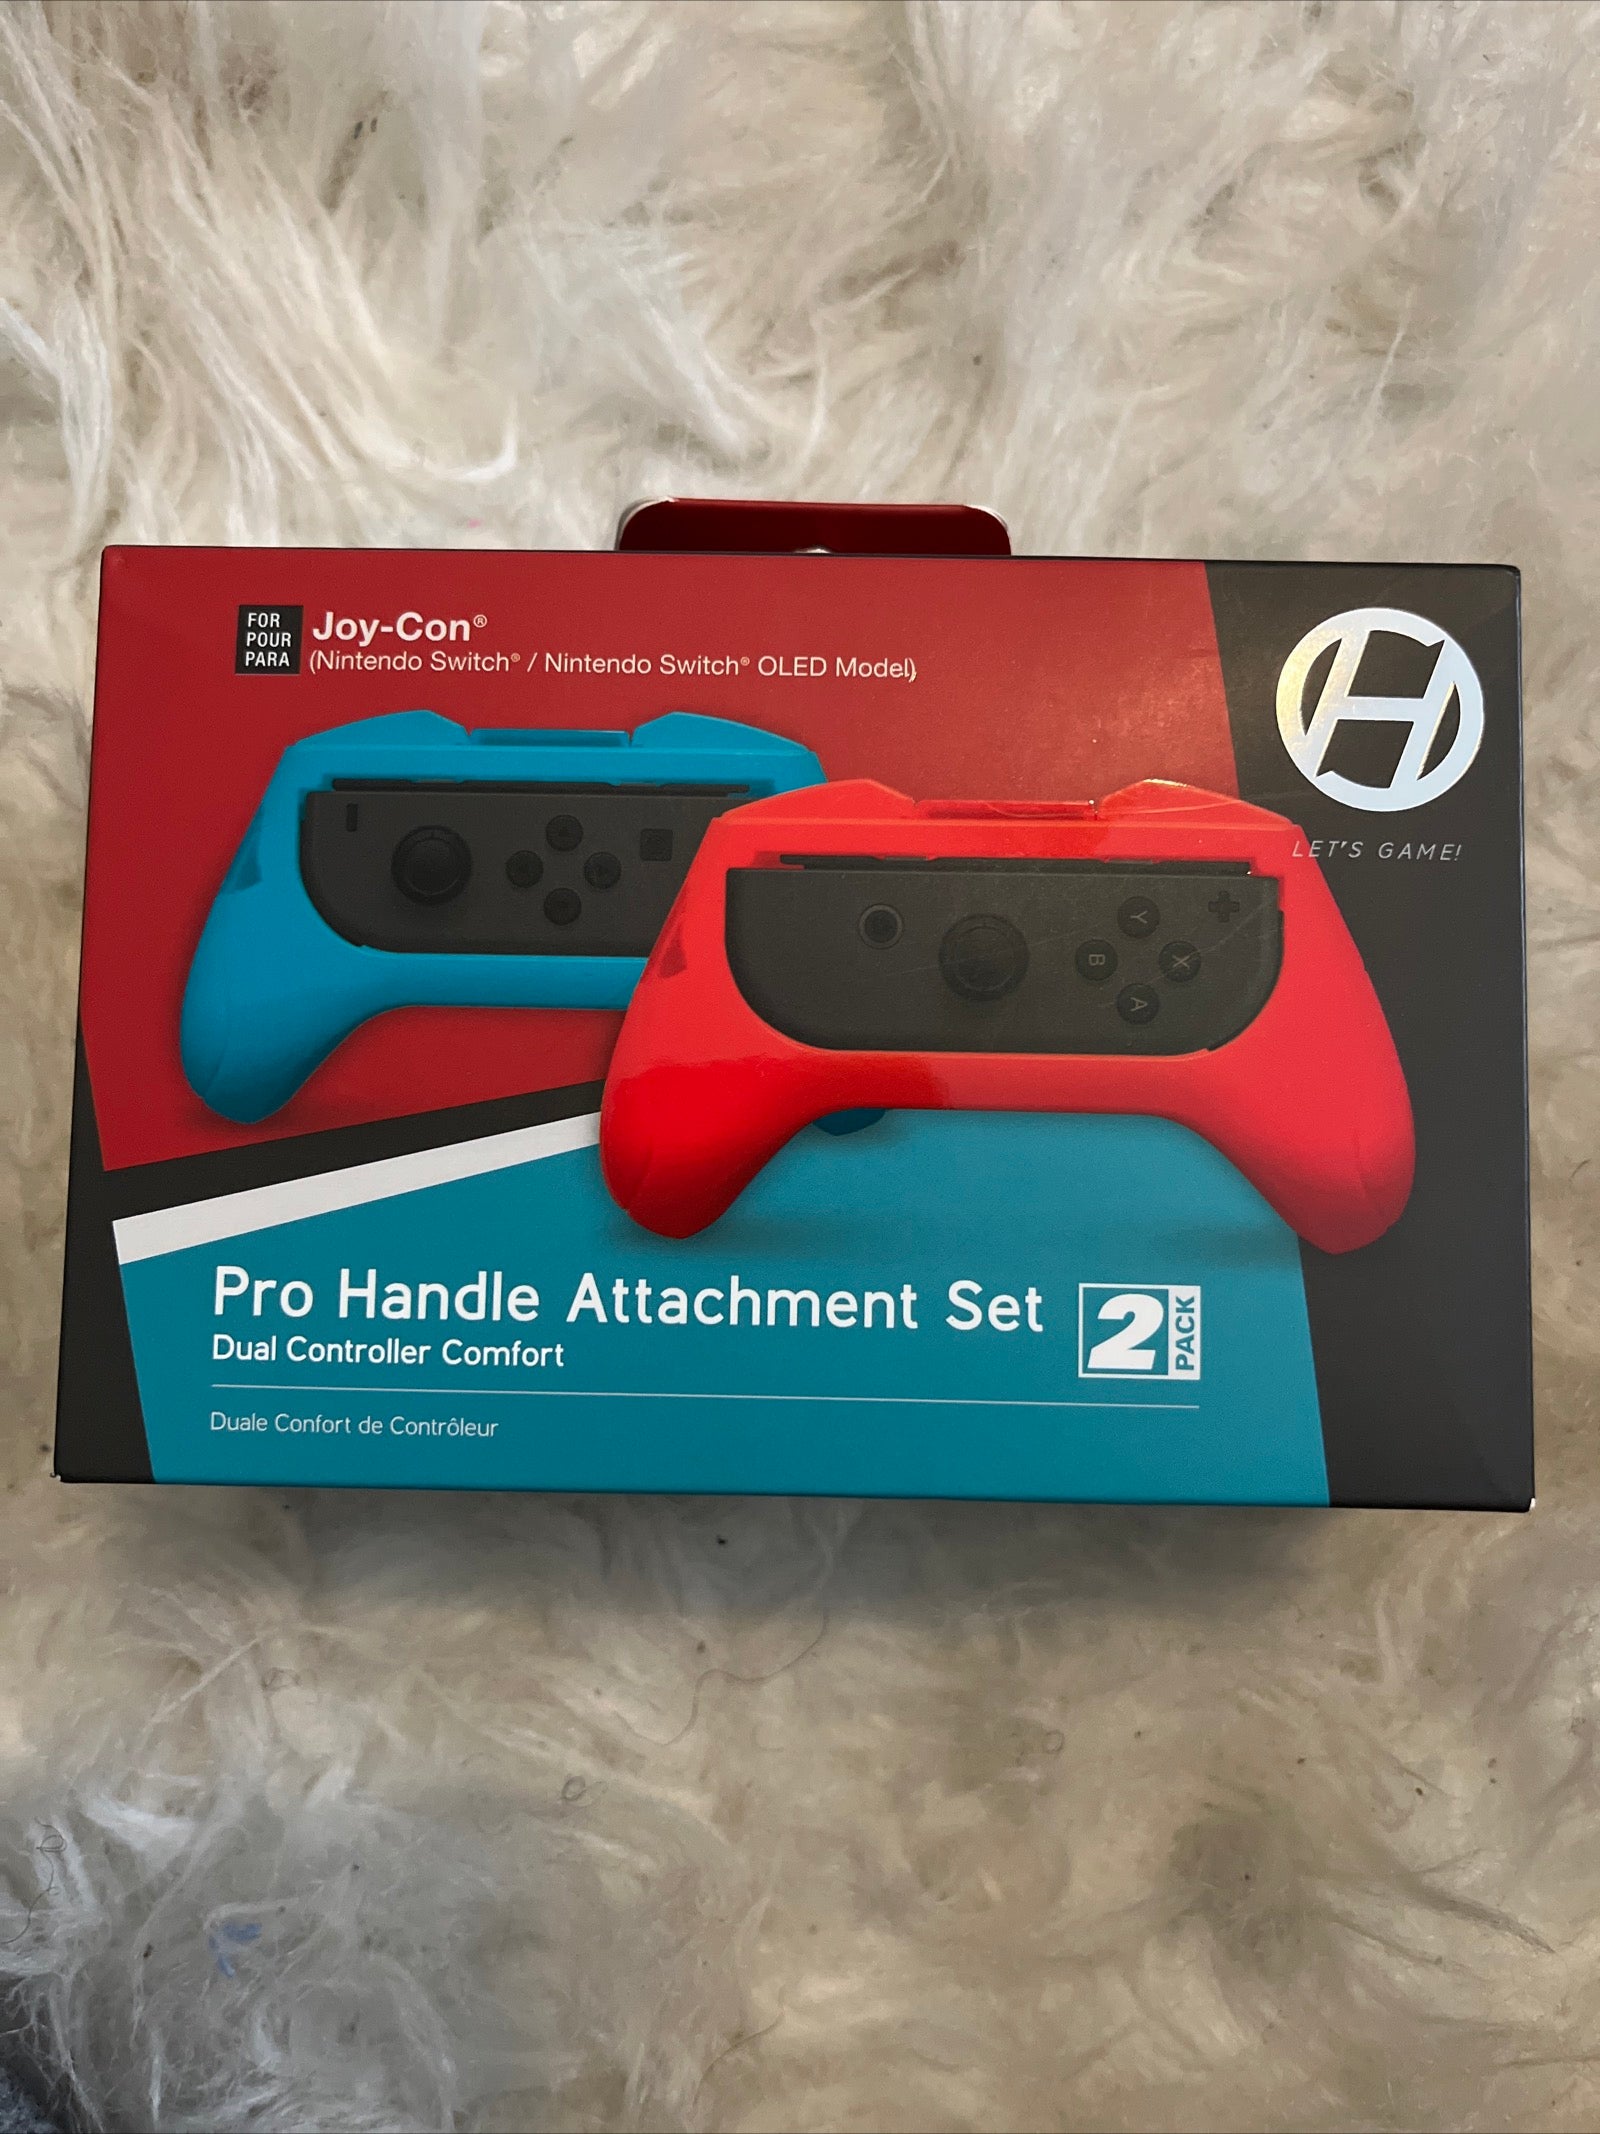 Pro Handle Attachment Set